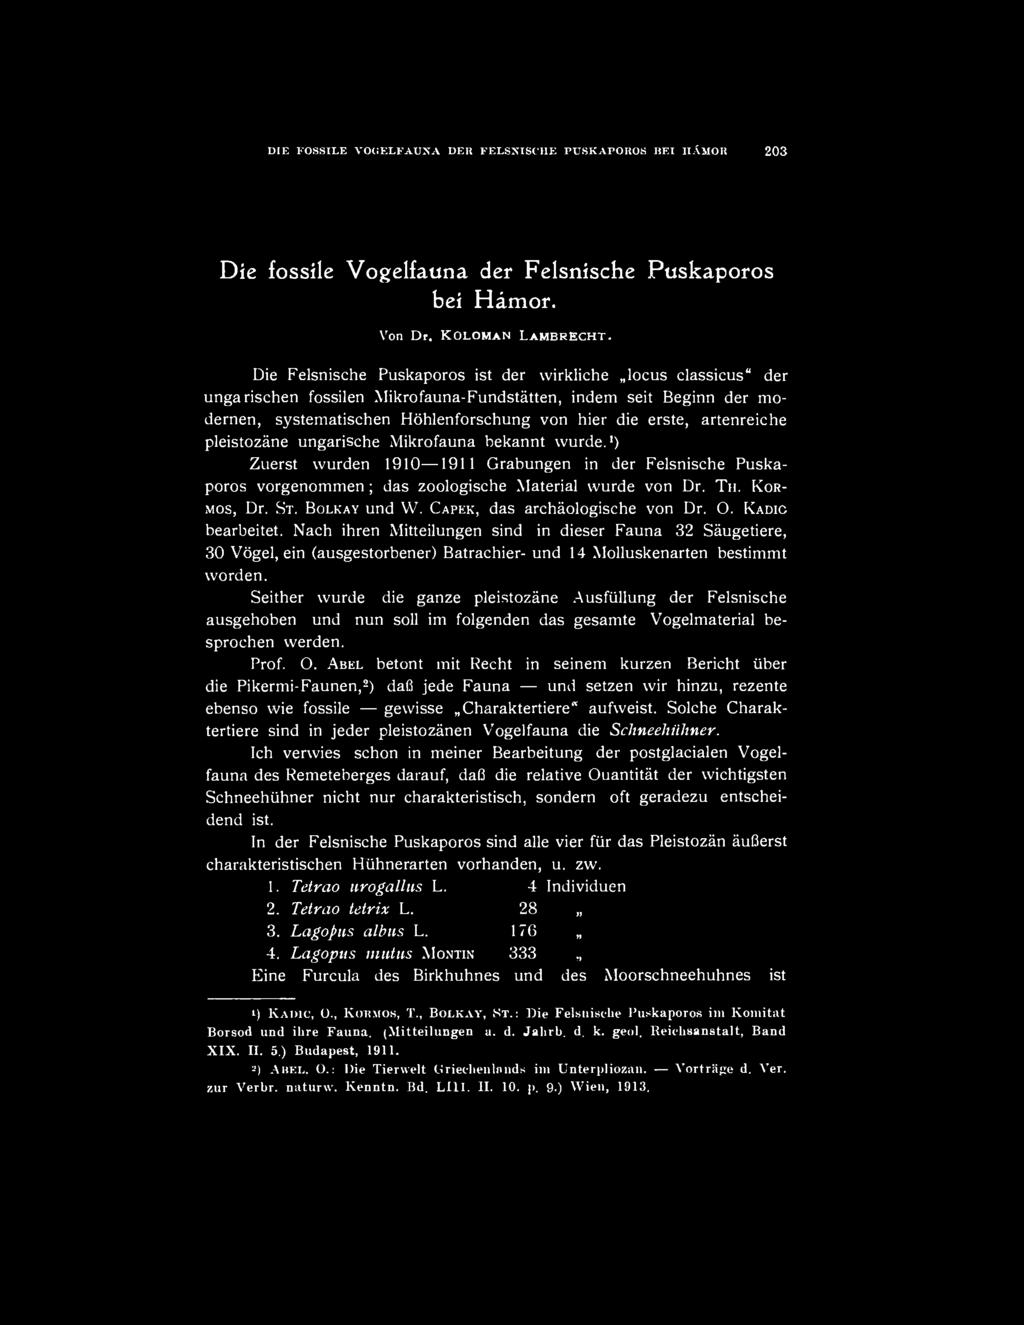 artenreiche pleistozáne ungarische Mikrofauna bekannt wurde. 1 ) Zuerst wurden 1910 1911 Grabungen in der Felsnische Puskaporos vorgenommen; das zoologische Material wurde von Dr. TH. KOR- MOS, Dr.